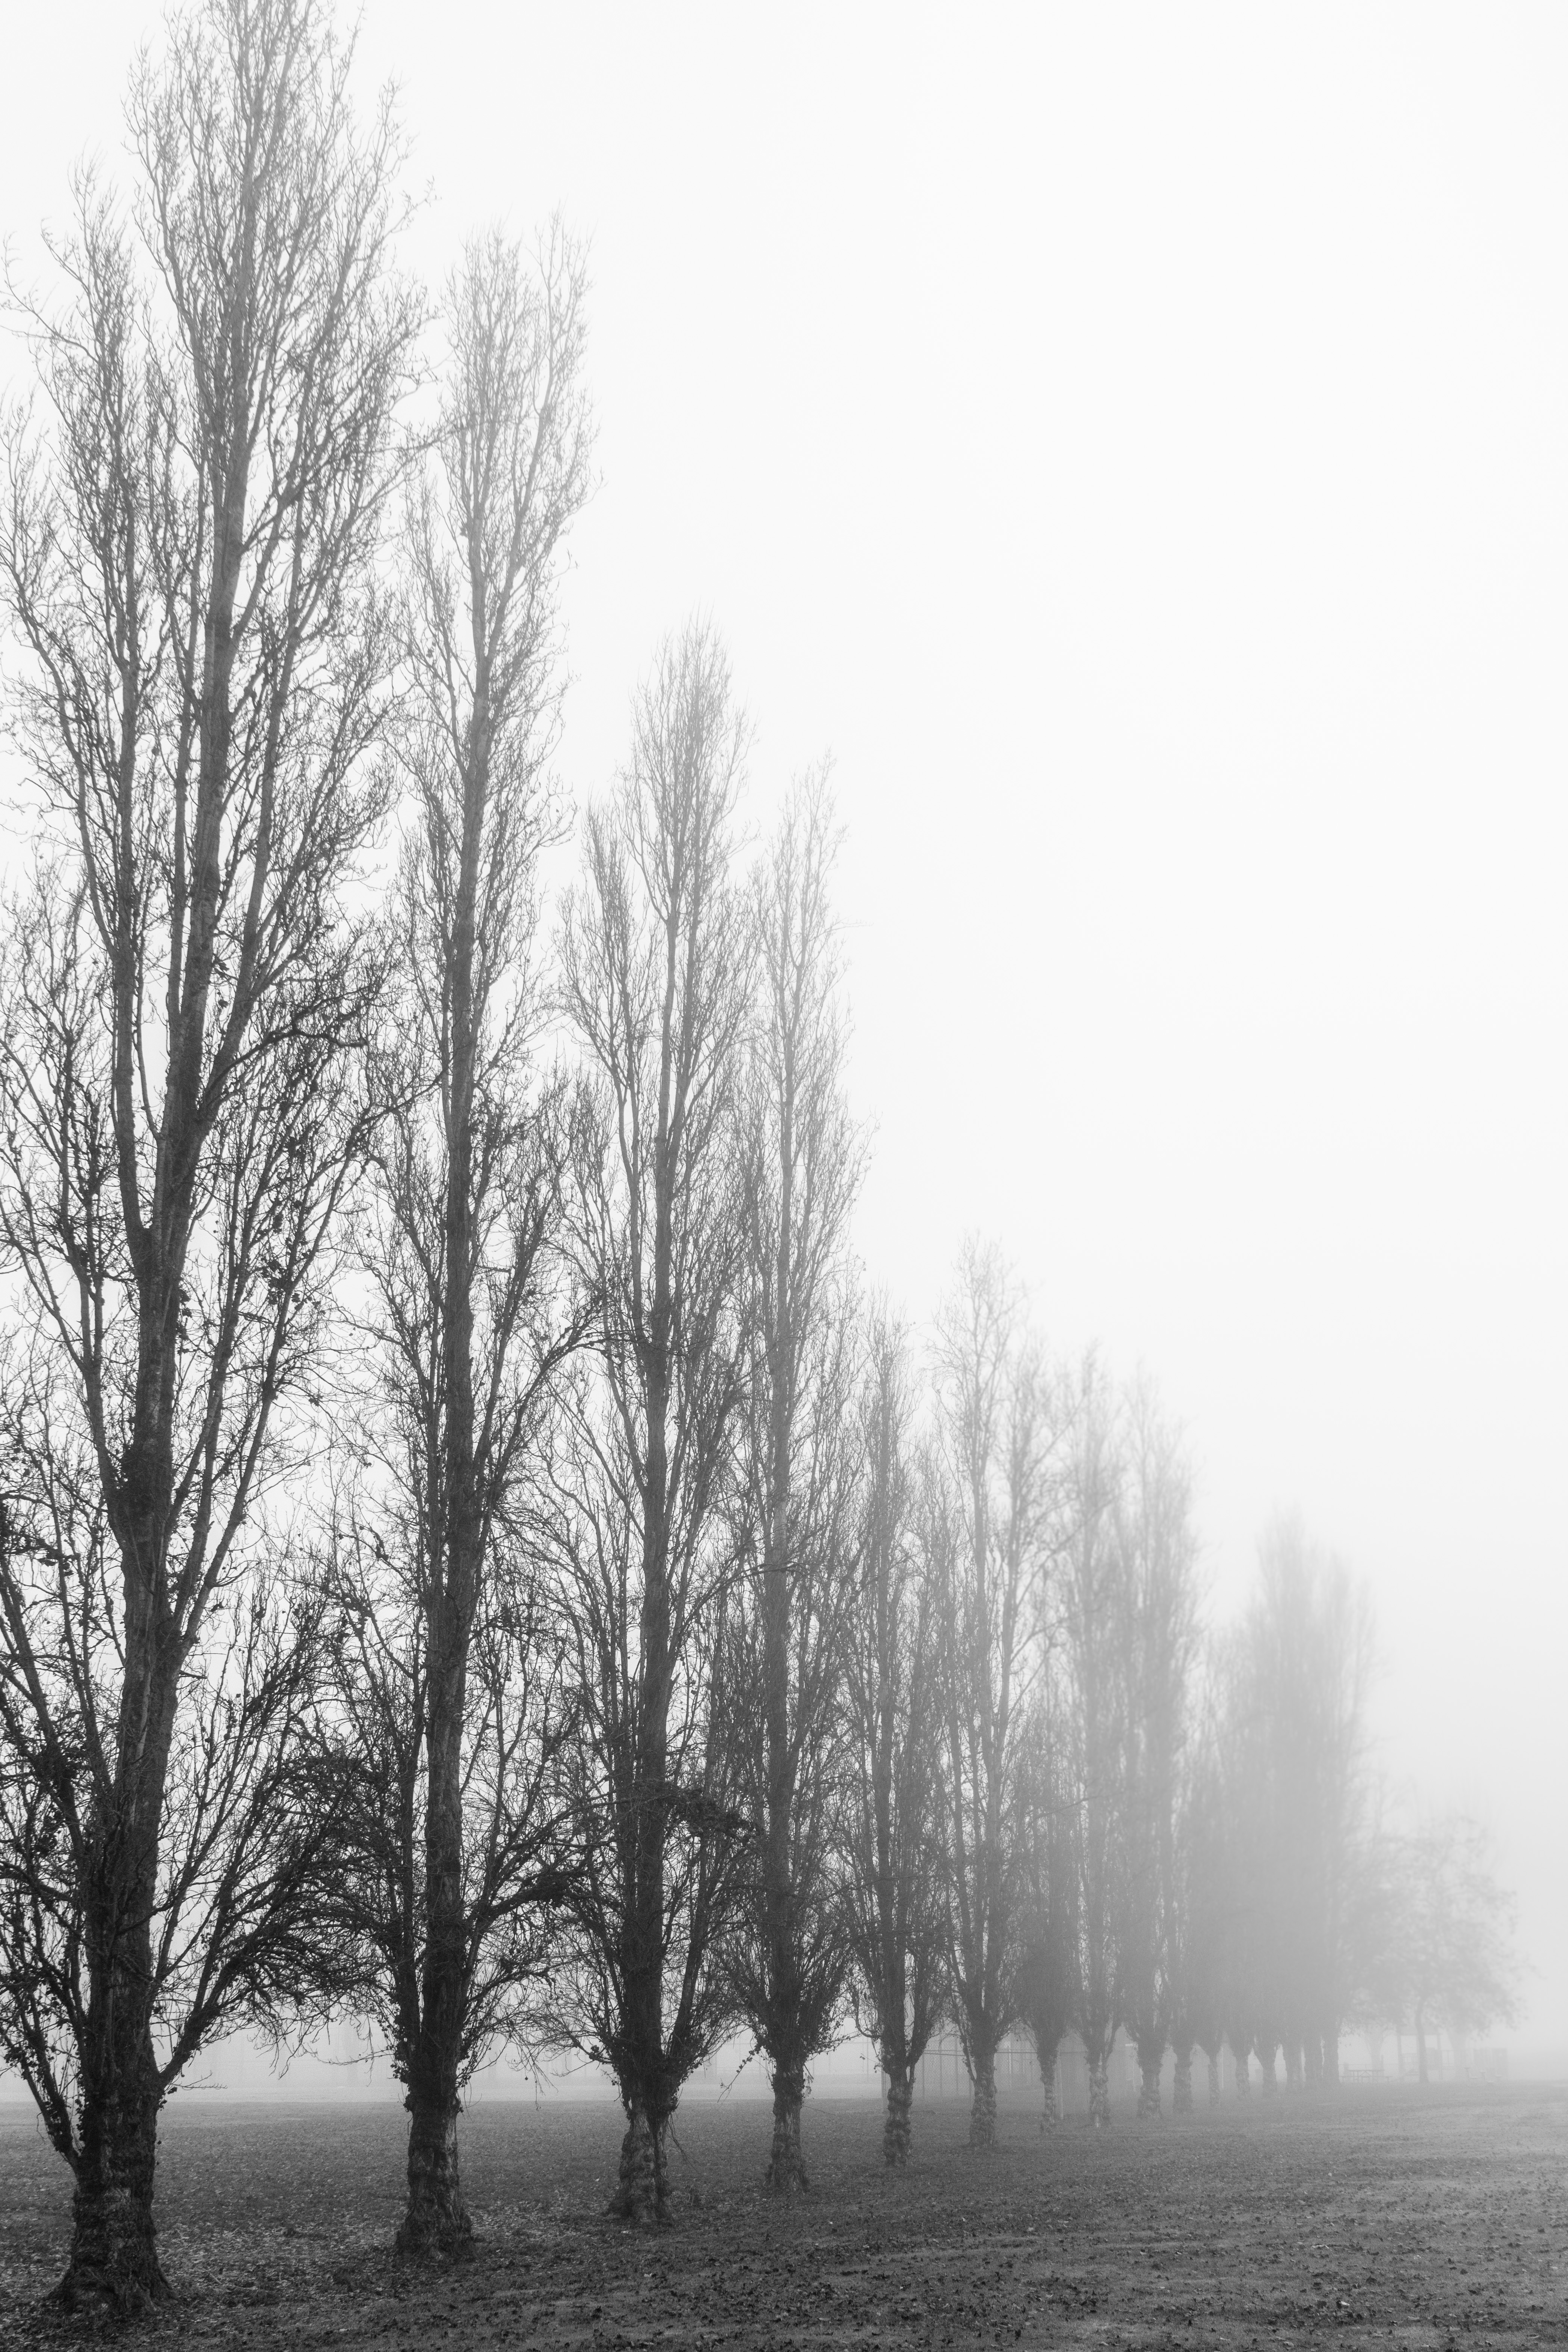 243: The War of Fog